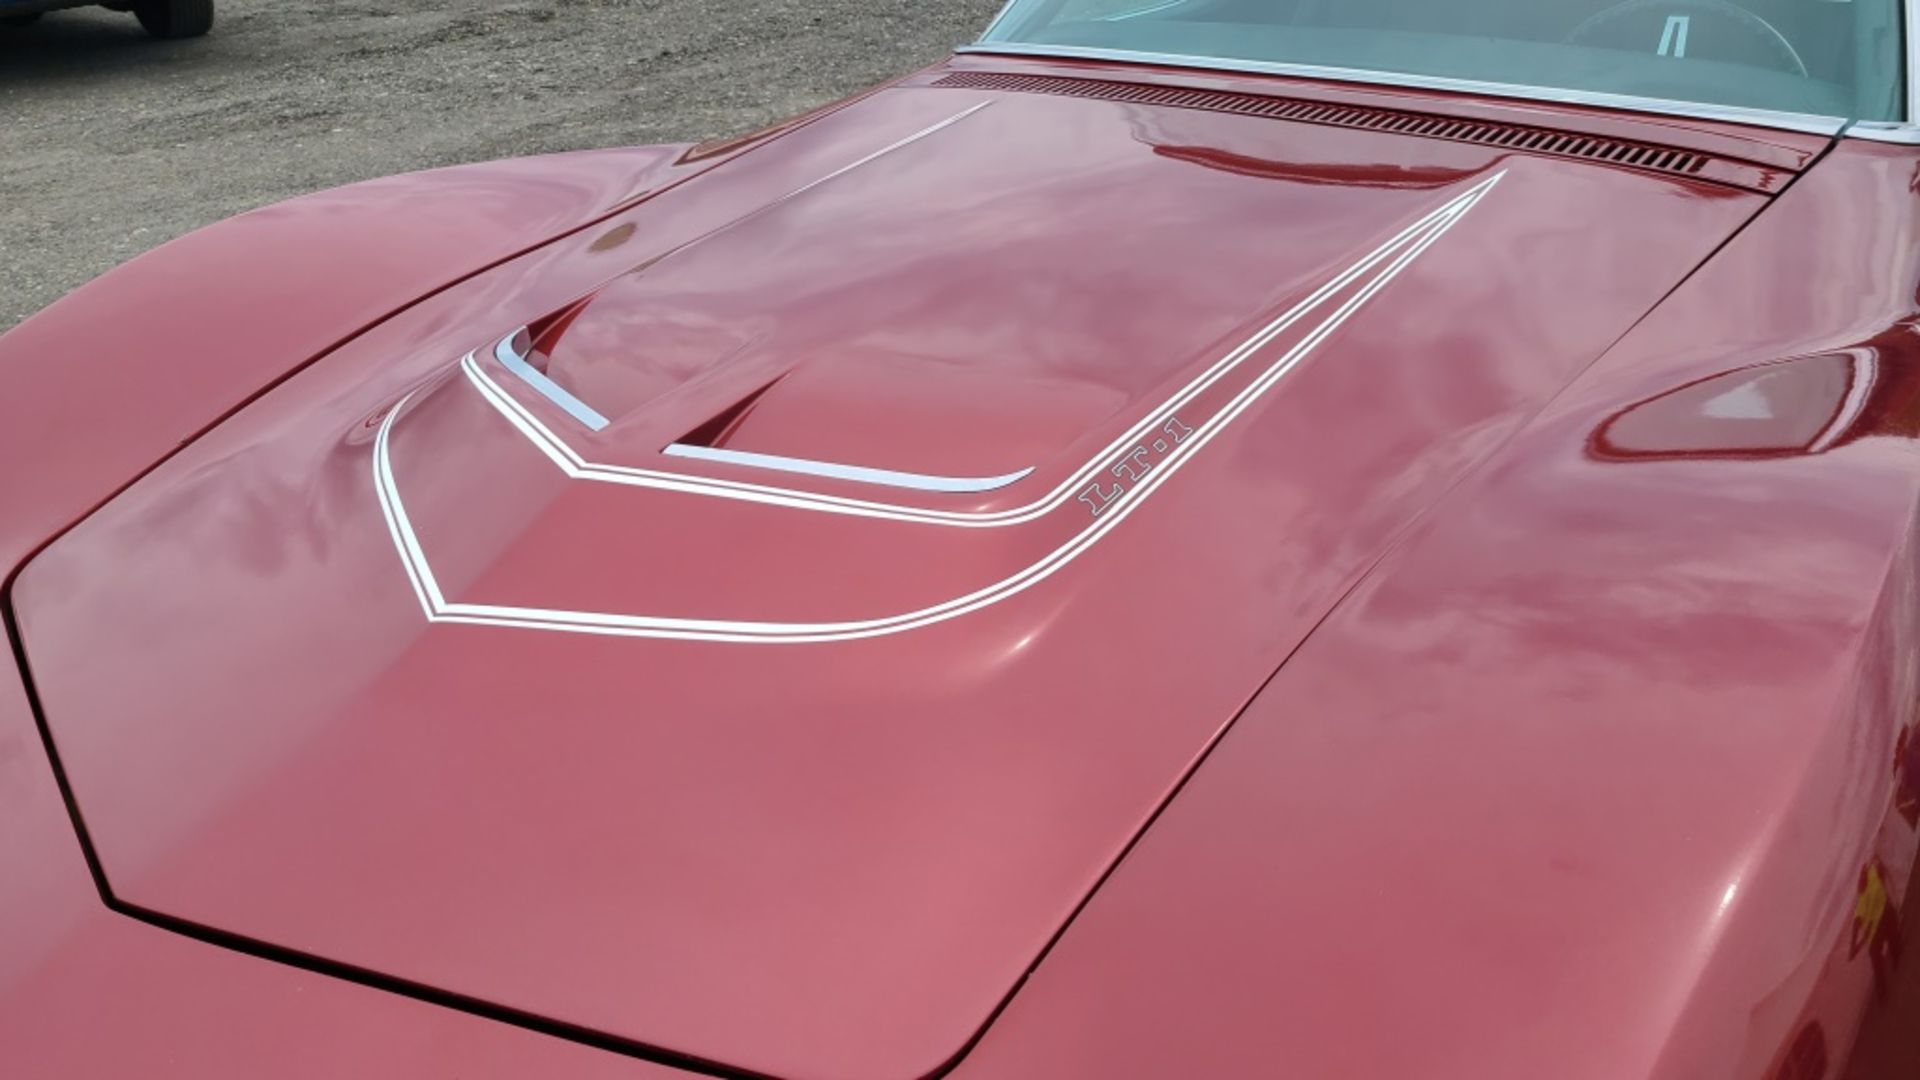 1970 Chevy Corvette - Image 2 of 13